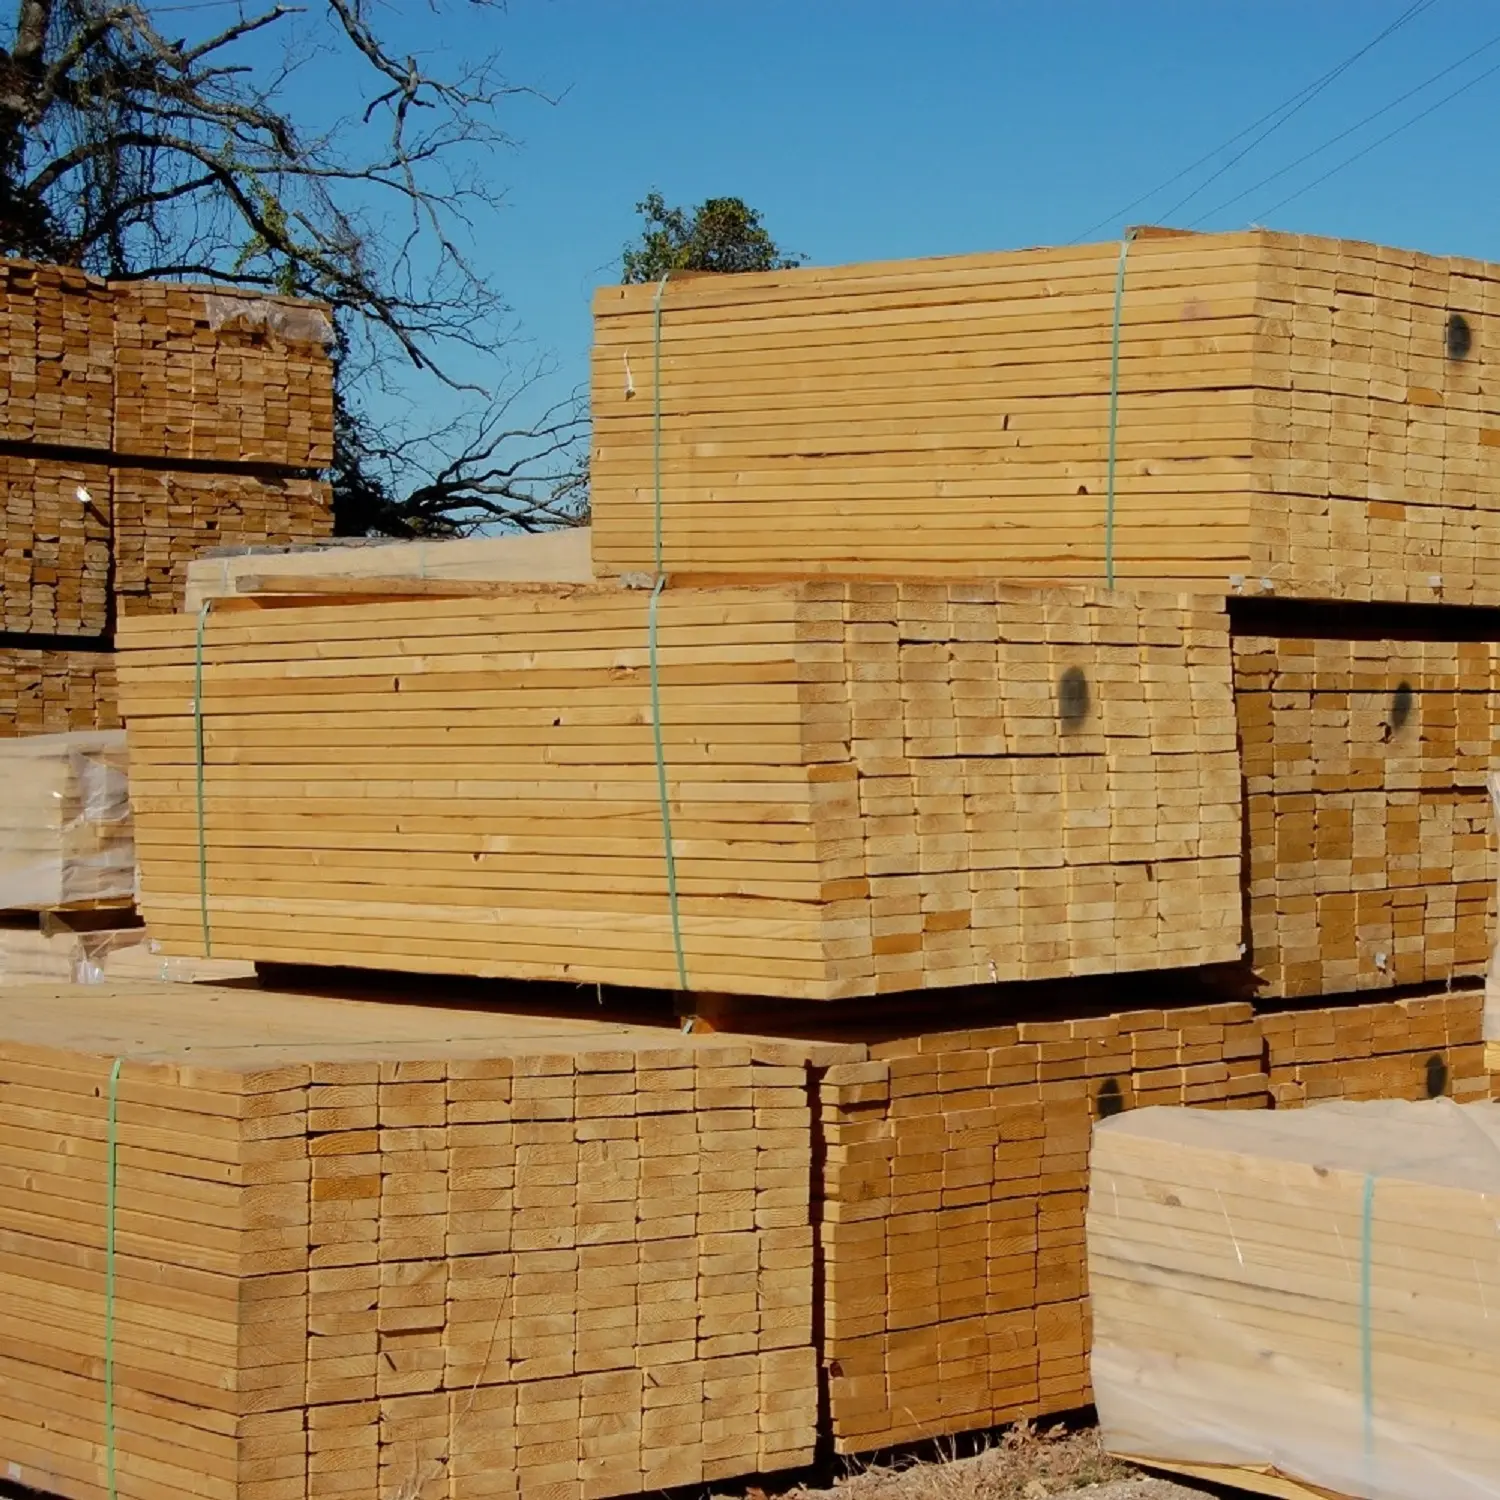 Madeira madeira madeira madeira madeira madeira madeira radiata pine mgp10 madeira madeira madeira f7 f5 quadro de construção